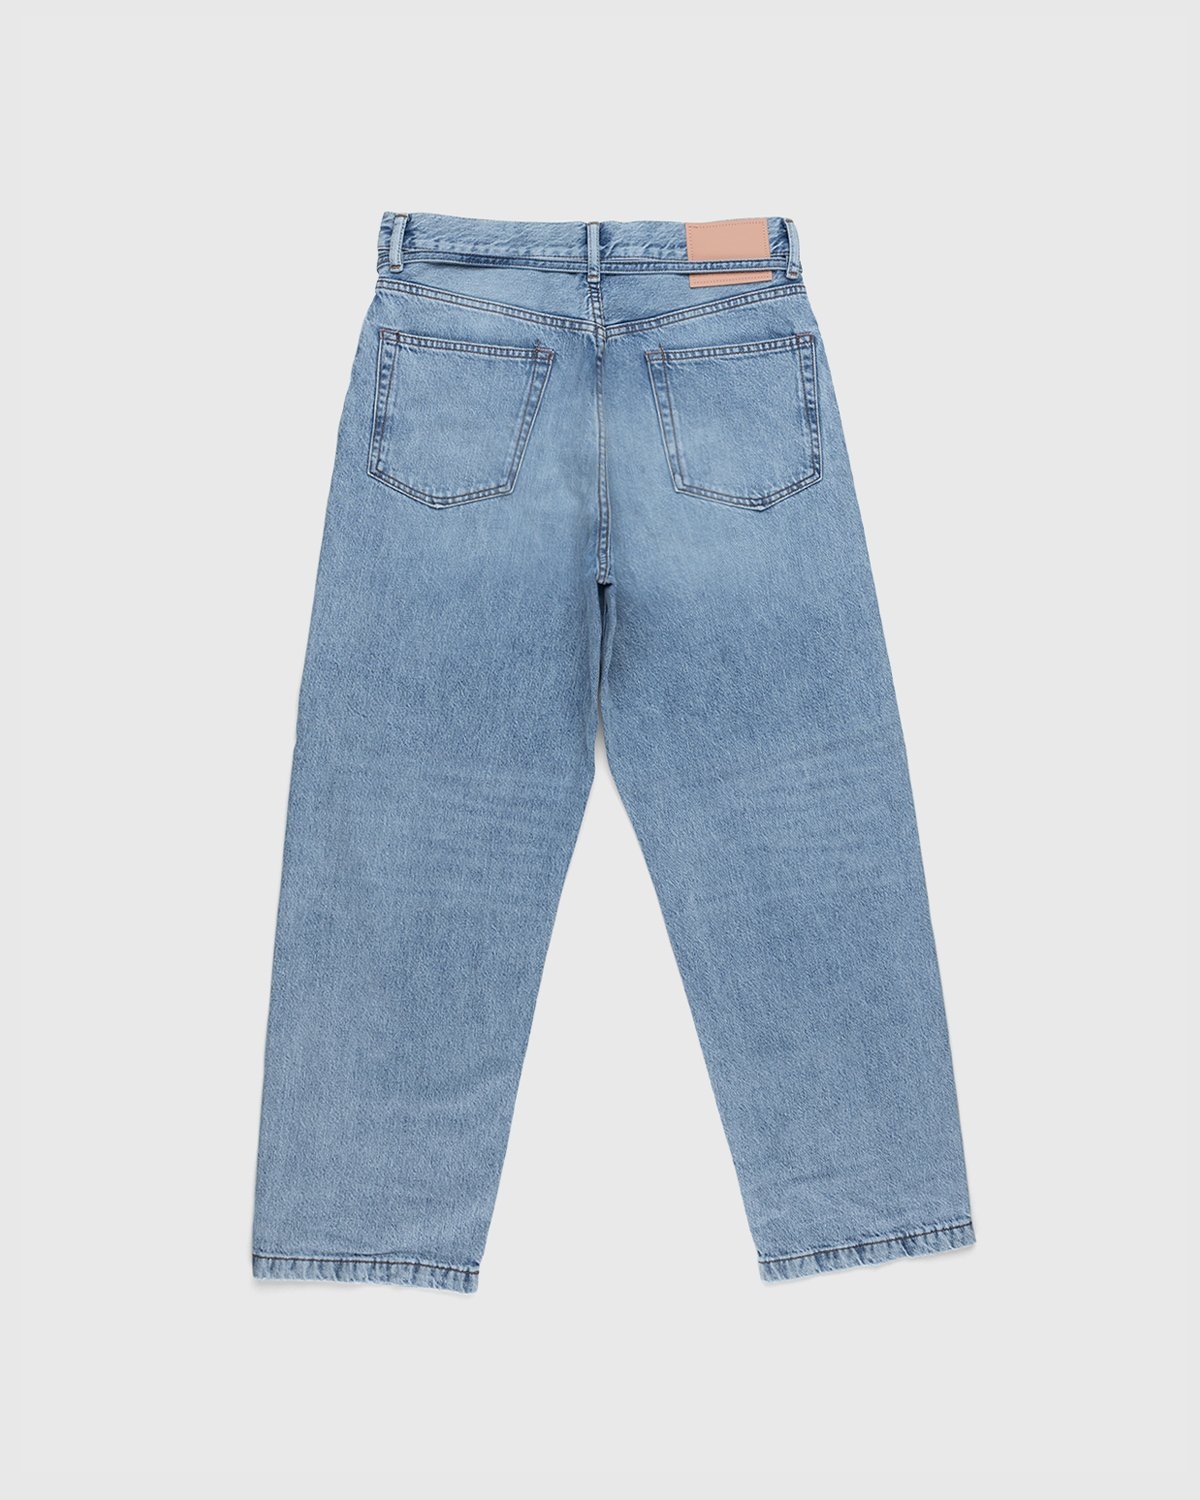 Acne Studios – Loose Fit Jeans Blue - Pants - Blue - Image 2